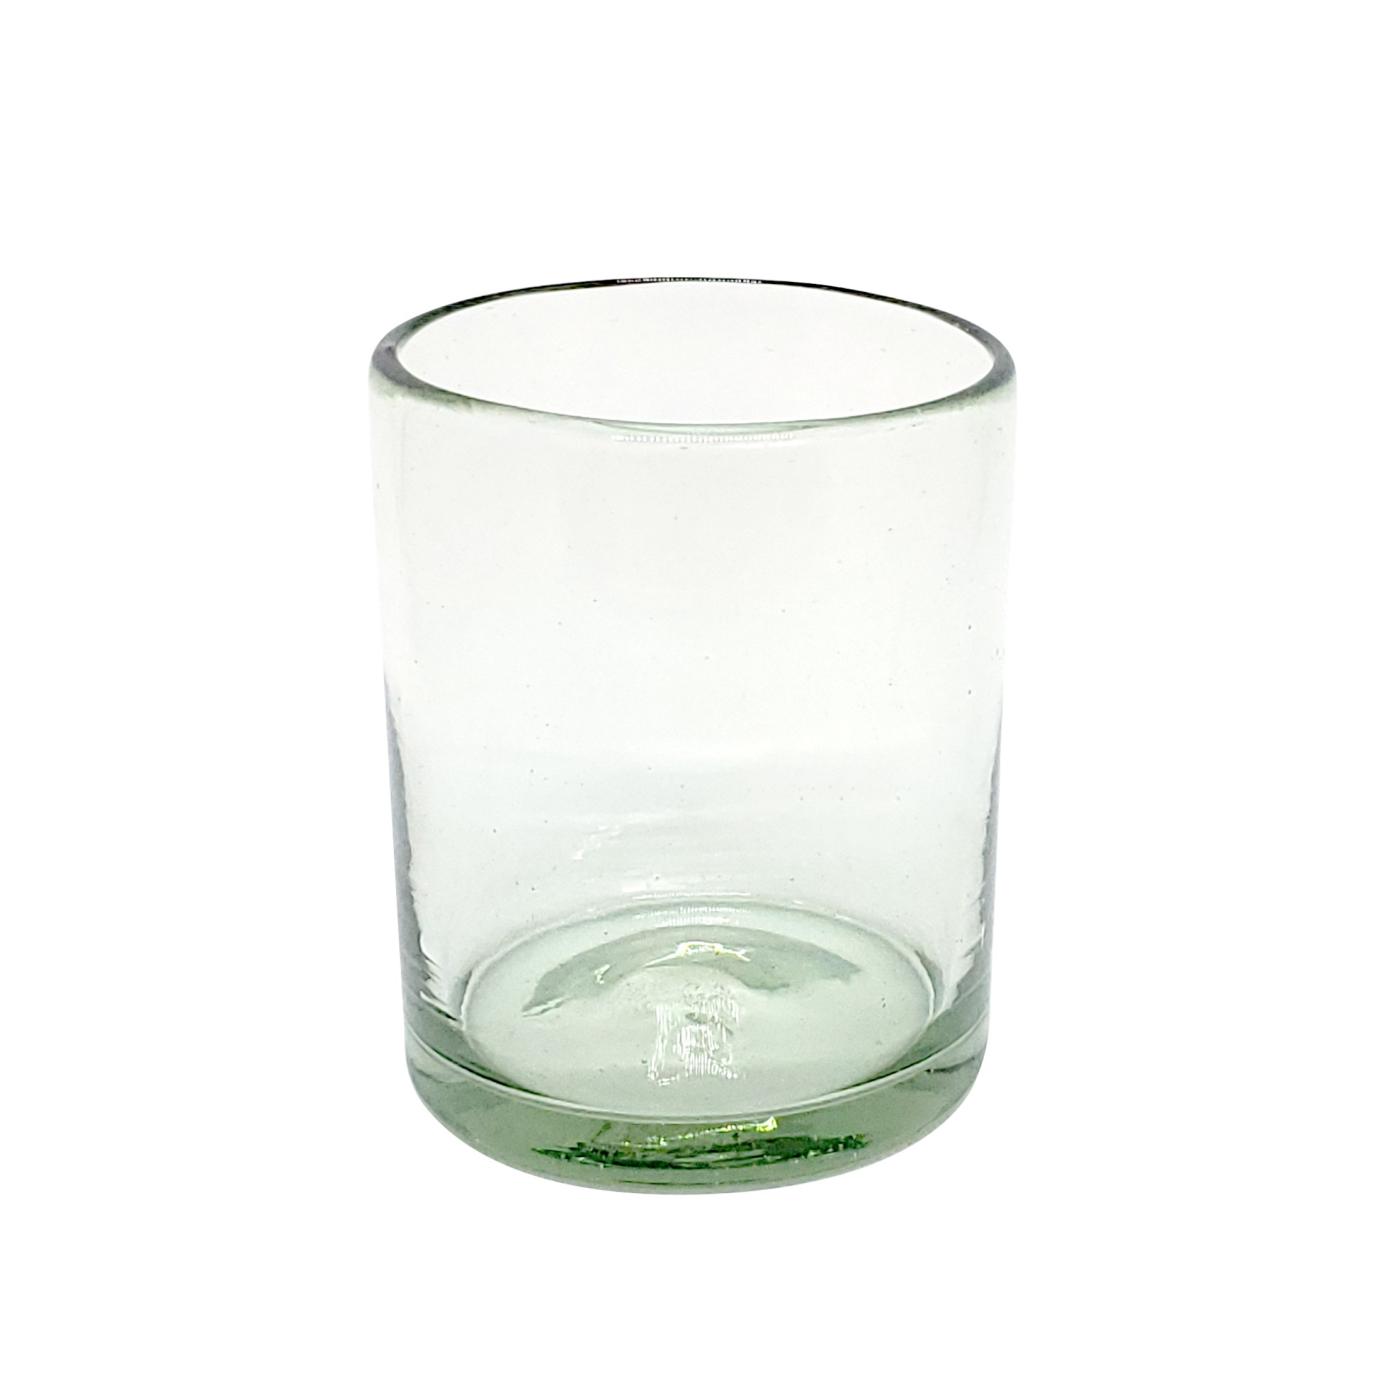 VIDRIO SOPLADO al Mayoreo / vasos chicos transparentes, 10 oz, Vidrio Reciclado, Libre de Plomo y Toxinas / Para una apariencia ms tradicional, stos vasos de vidrio soplado son creados de manera 100% artesanal.